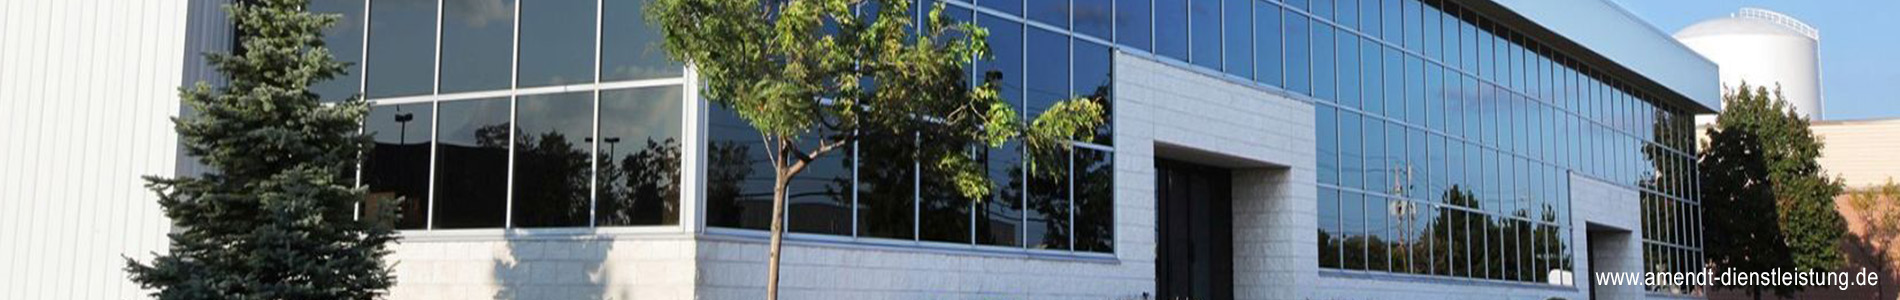 Fensterreinigung Glasreinigung Rahmenreinigung Münster, Amendt Dienstleistungsservice, Firmenzentrale Telgte